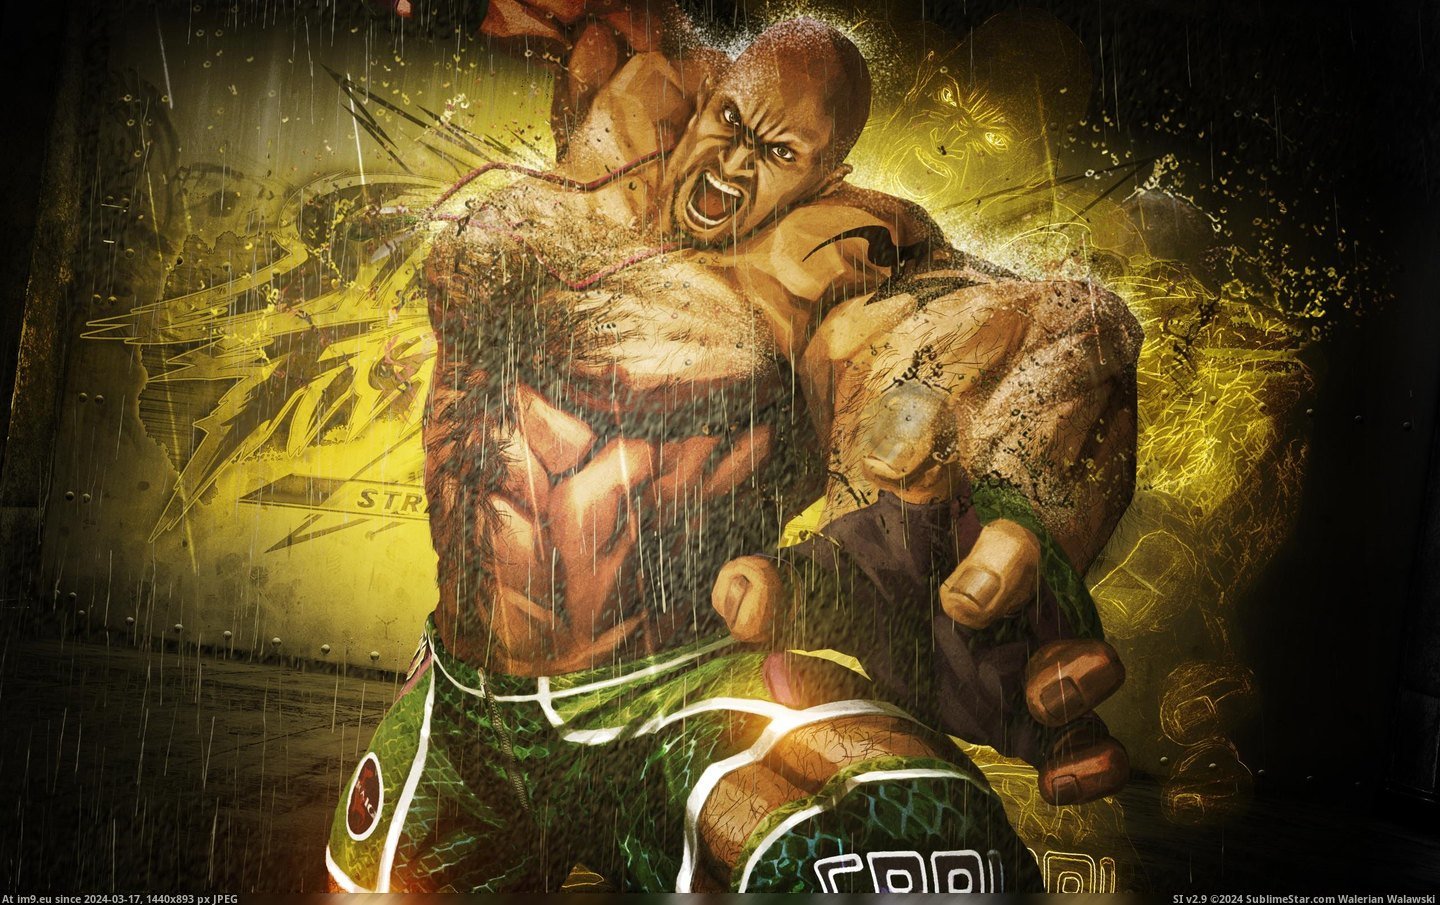 #Wallpaper #Wide #Marduk #Craig #Tekken Craig Marduk In Tekken Wide HD Wallpaper Pic. (Image of album Unique HD Wallpapers))